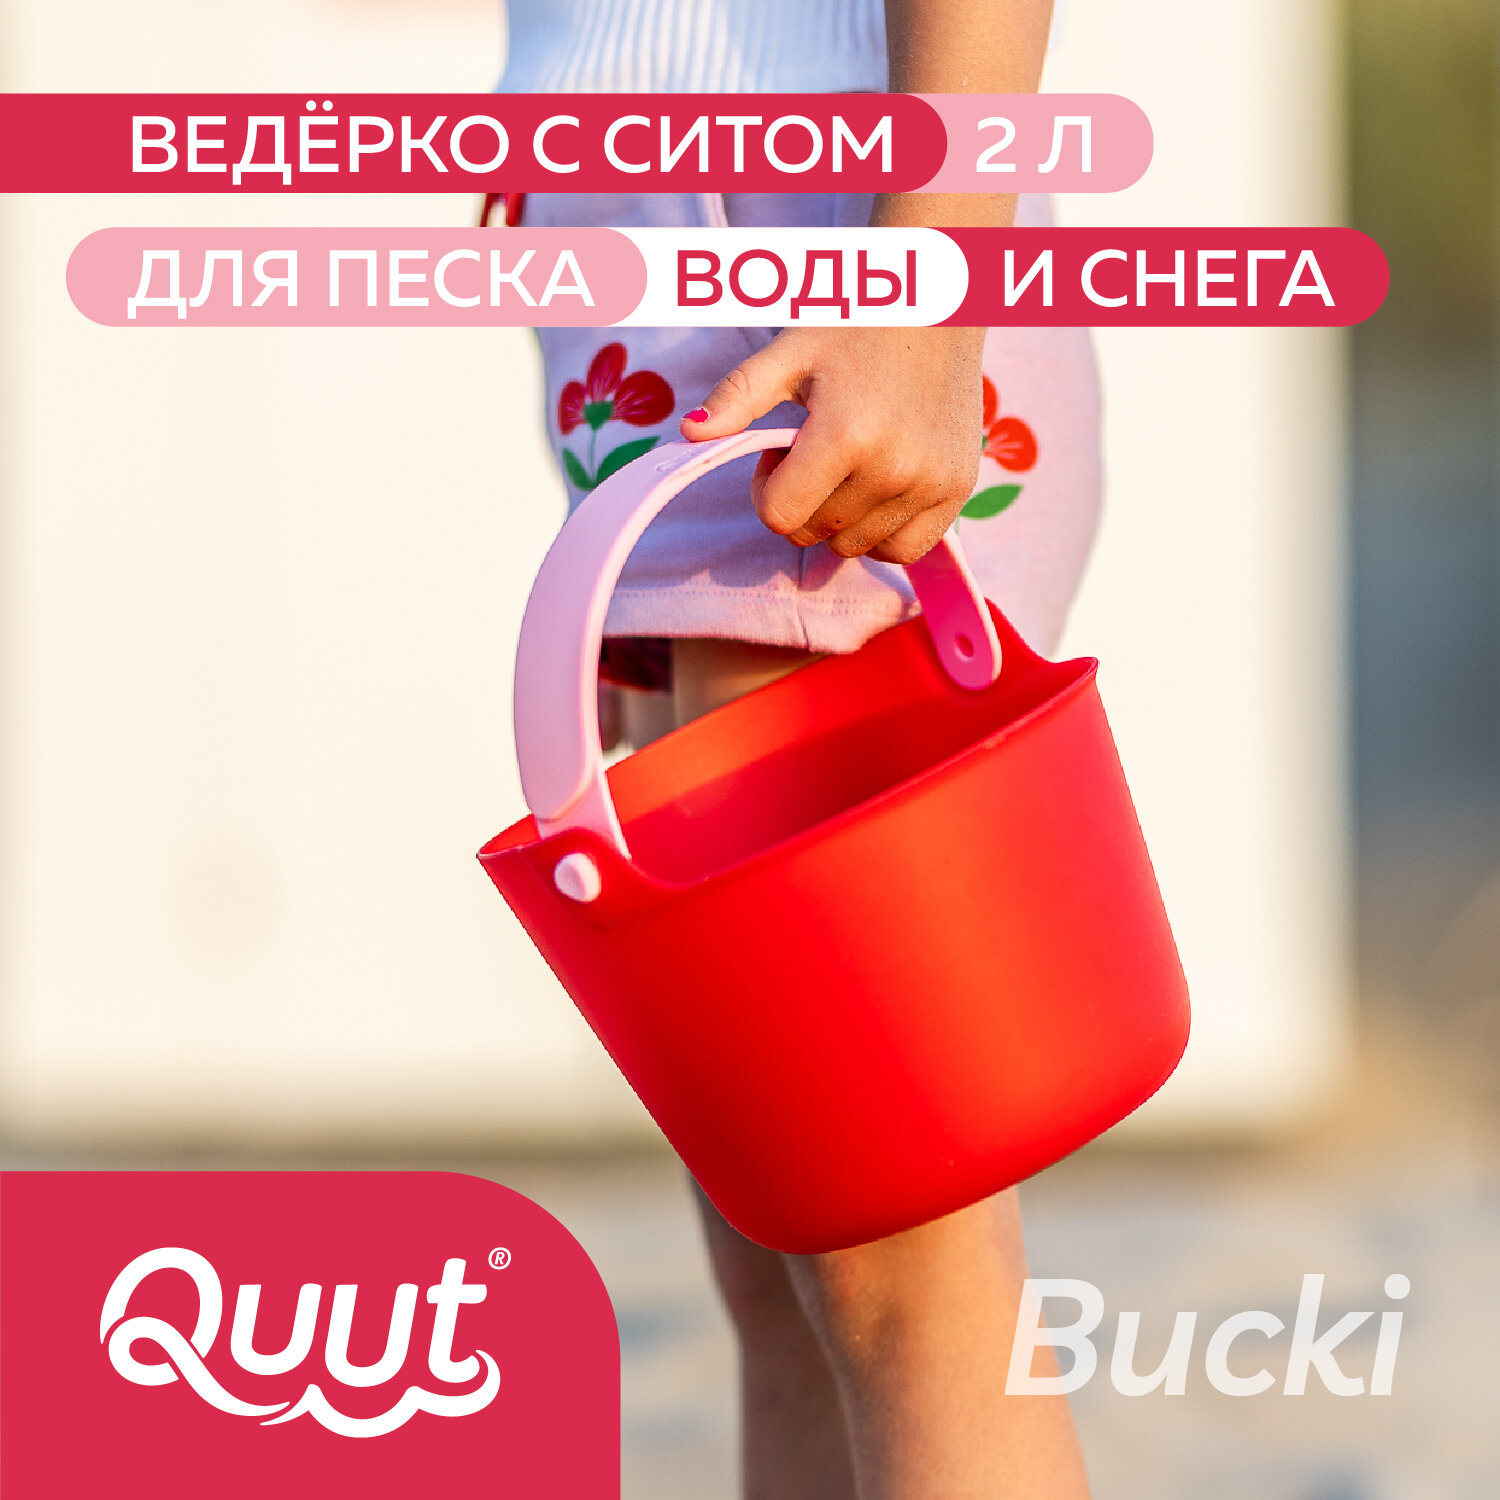 Детское ведерко для воды и песка Quut Bucki с ситом. Цвет: вишнёвый, банановый и розовый. Объём: 2 литра